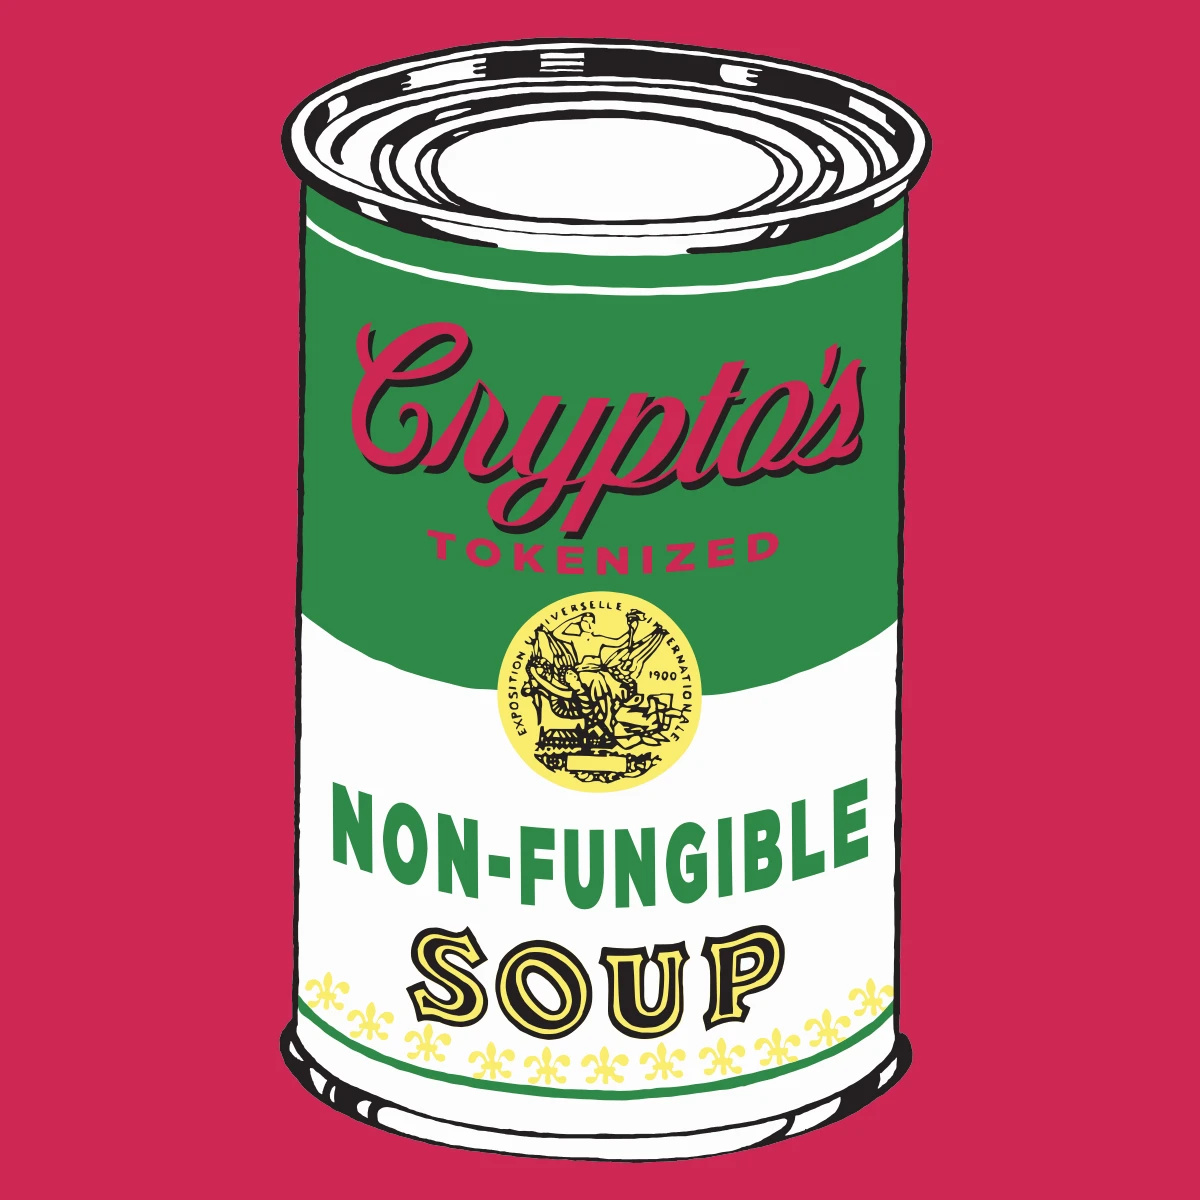 Non-Fungible Soup #0101